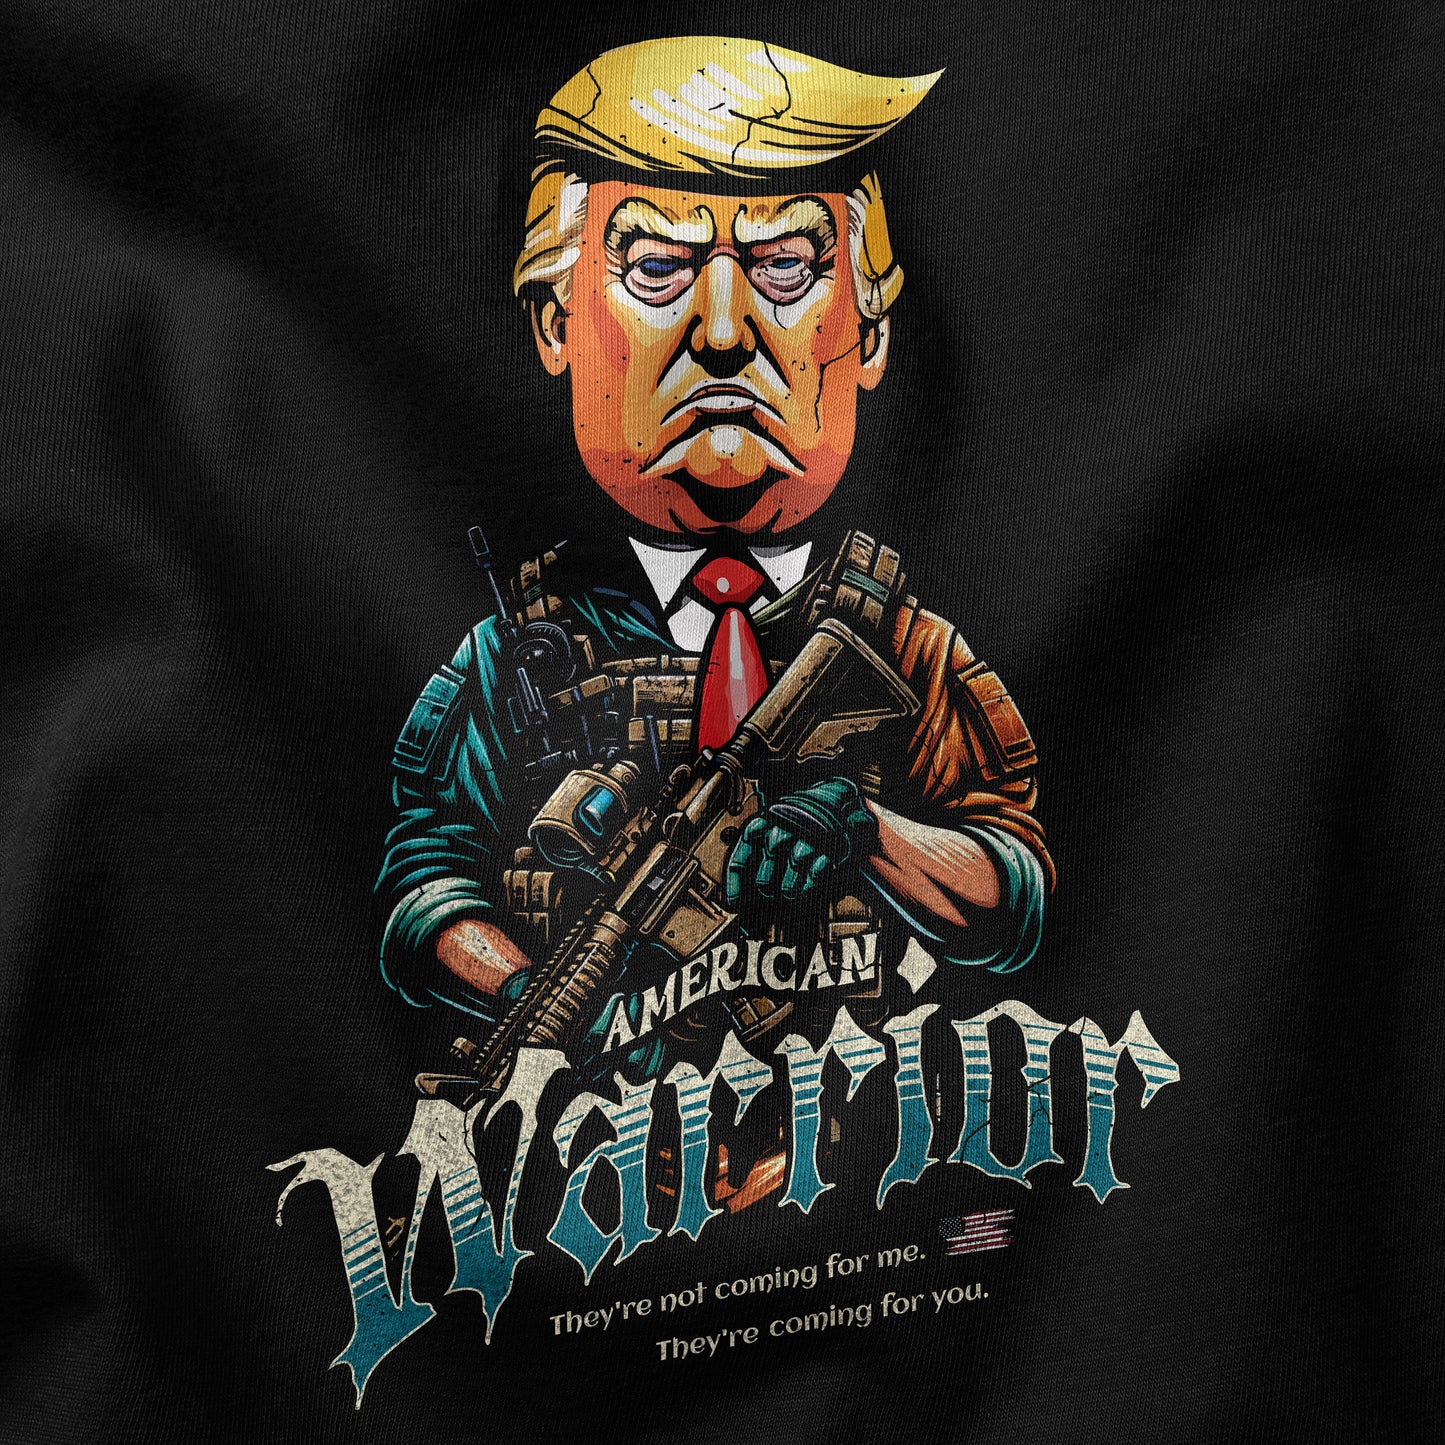 Tactical Trump t-shirt design closeup